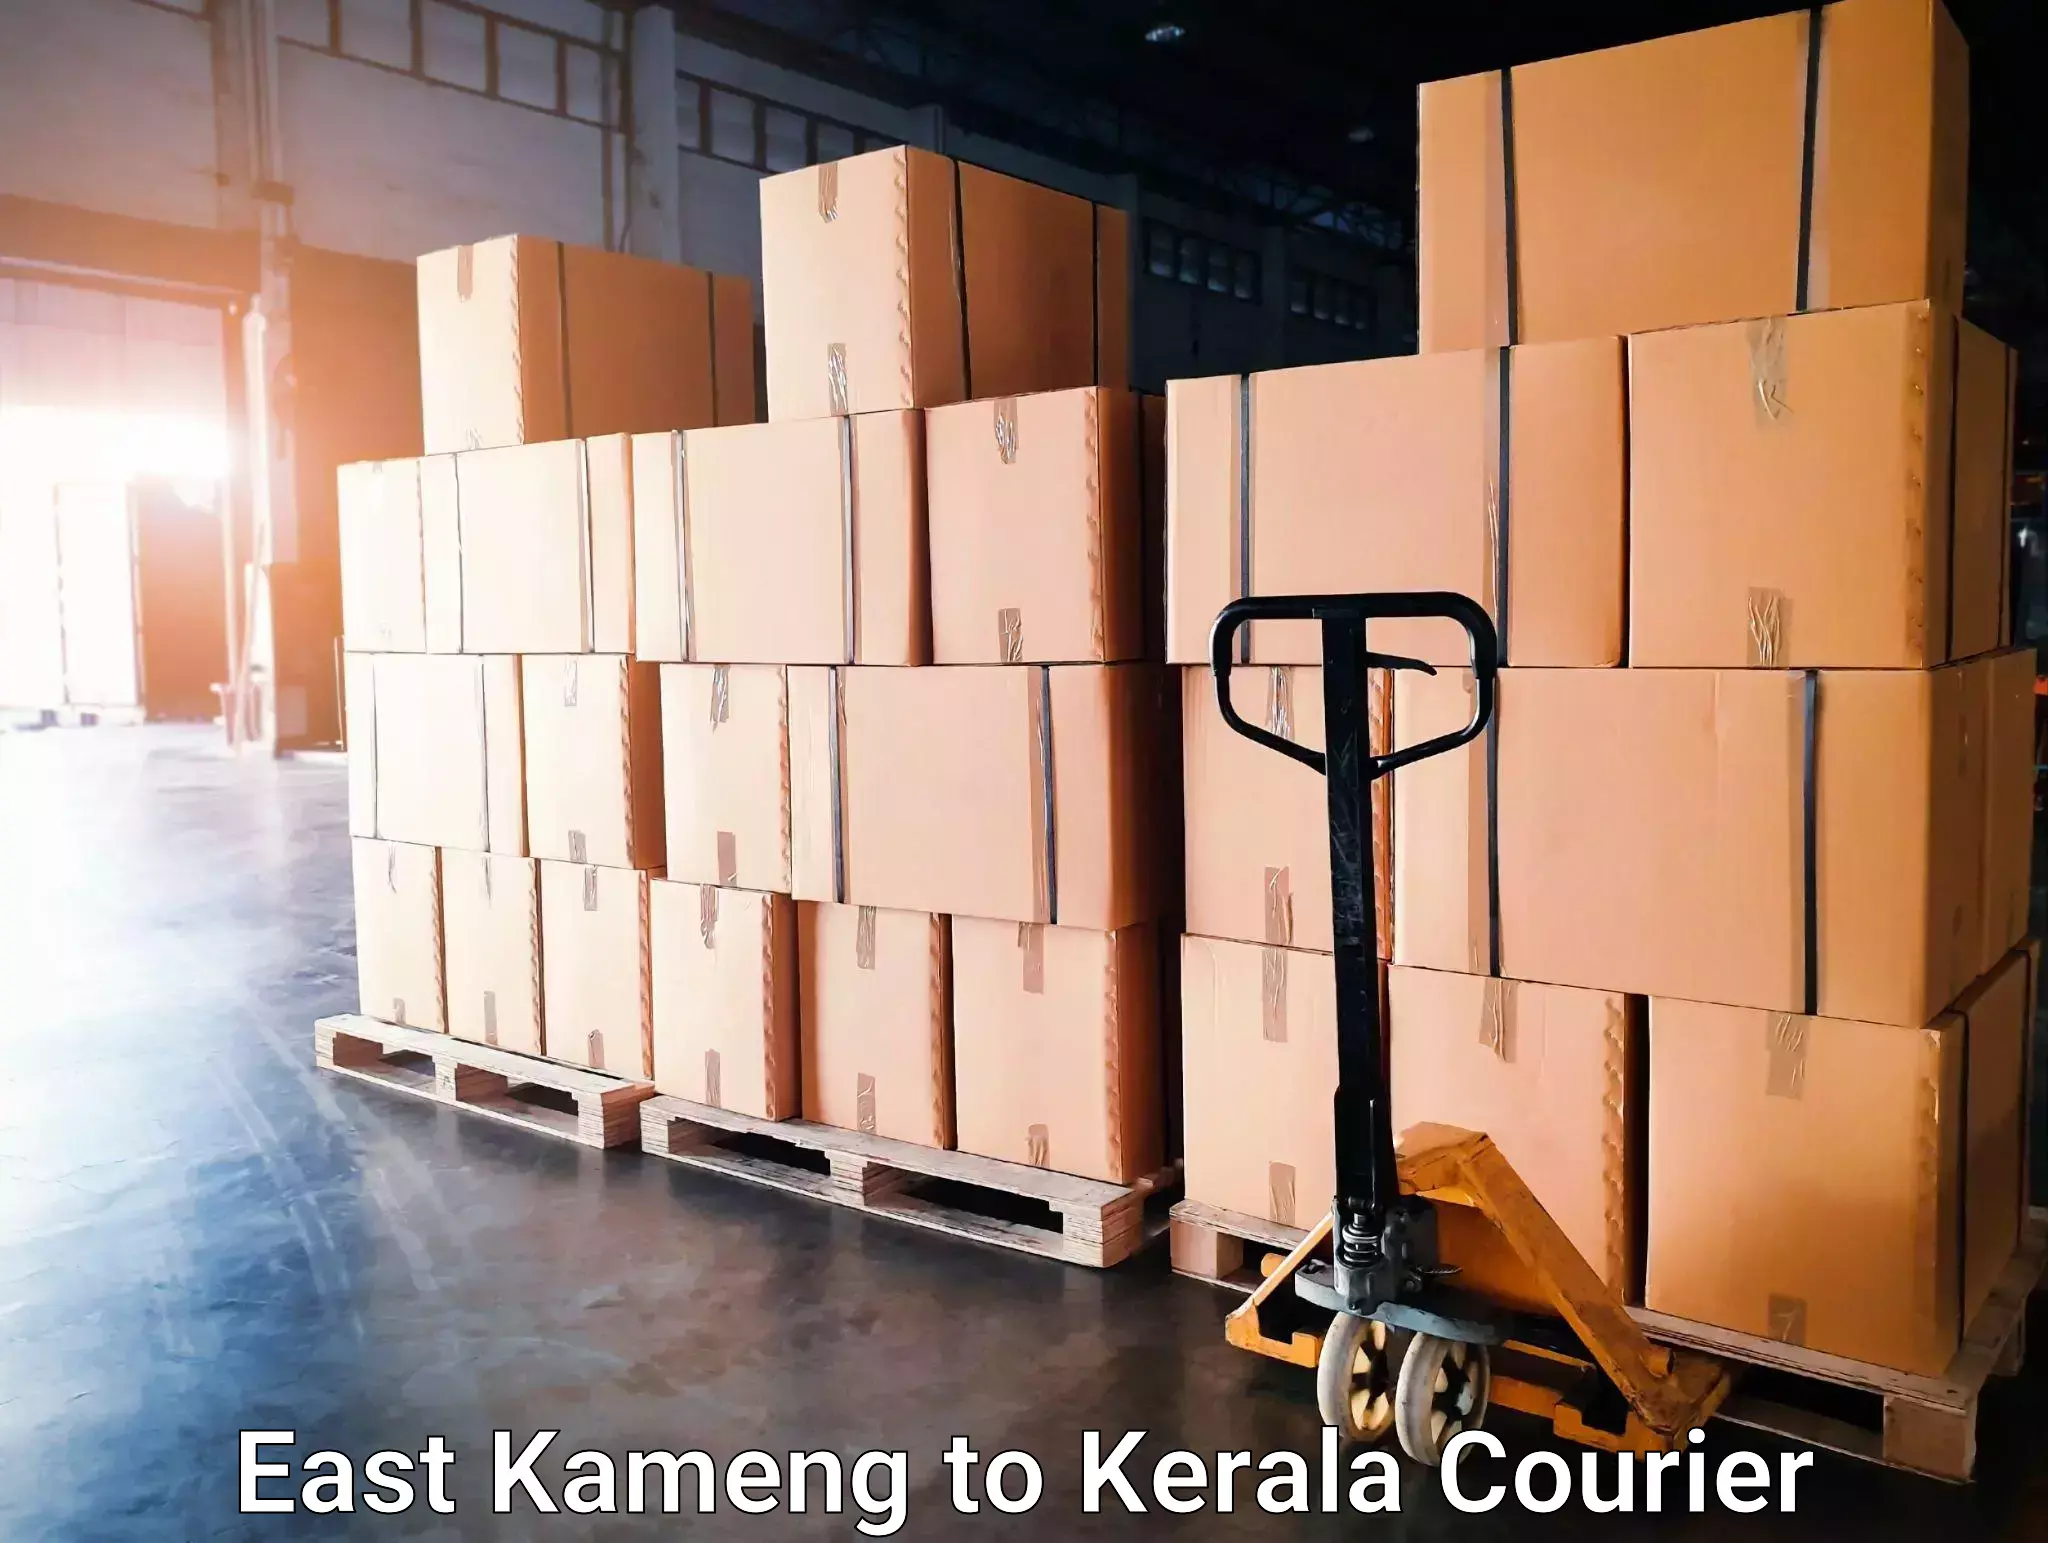 Subscription-based courier East Kameng to Manjeshwar